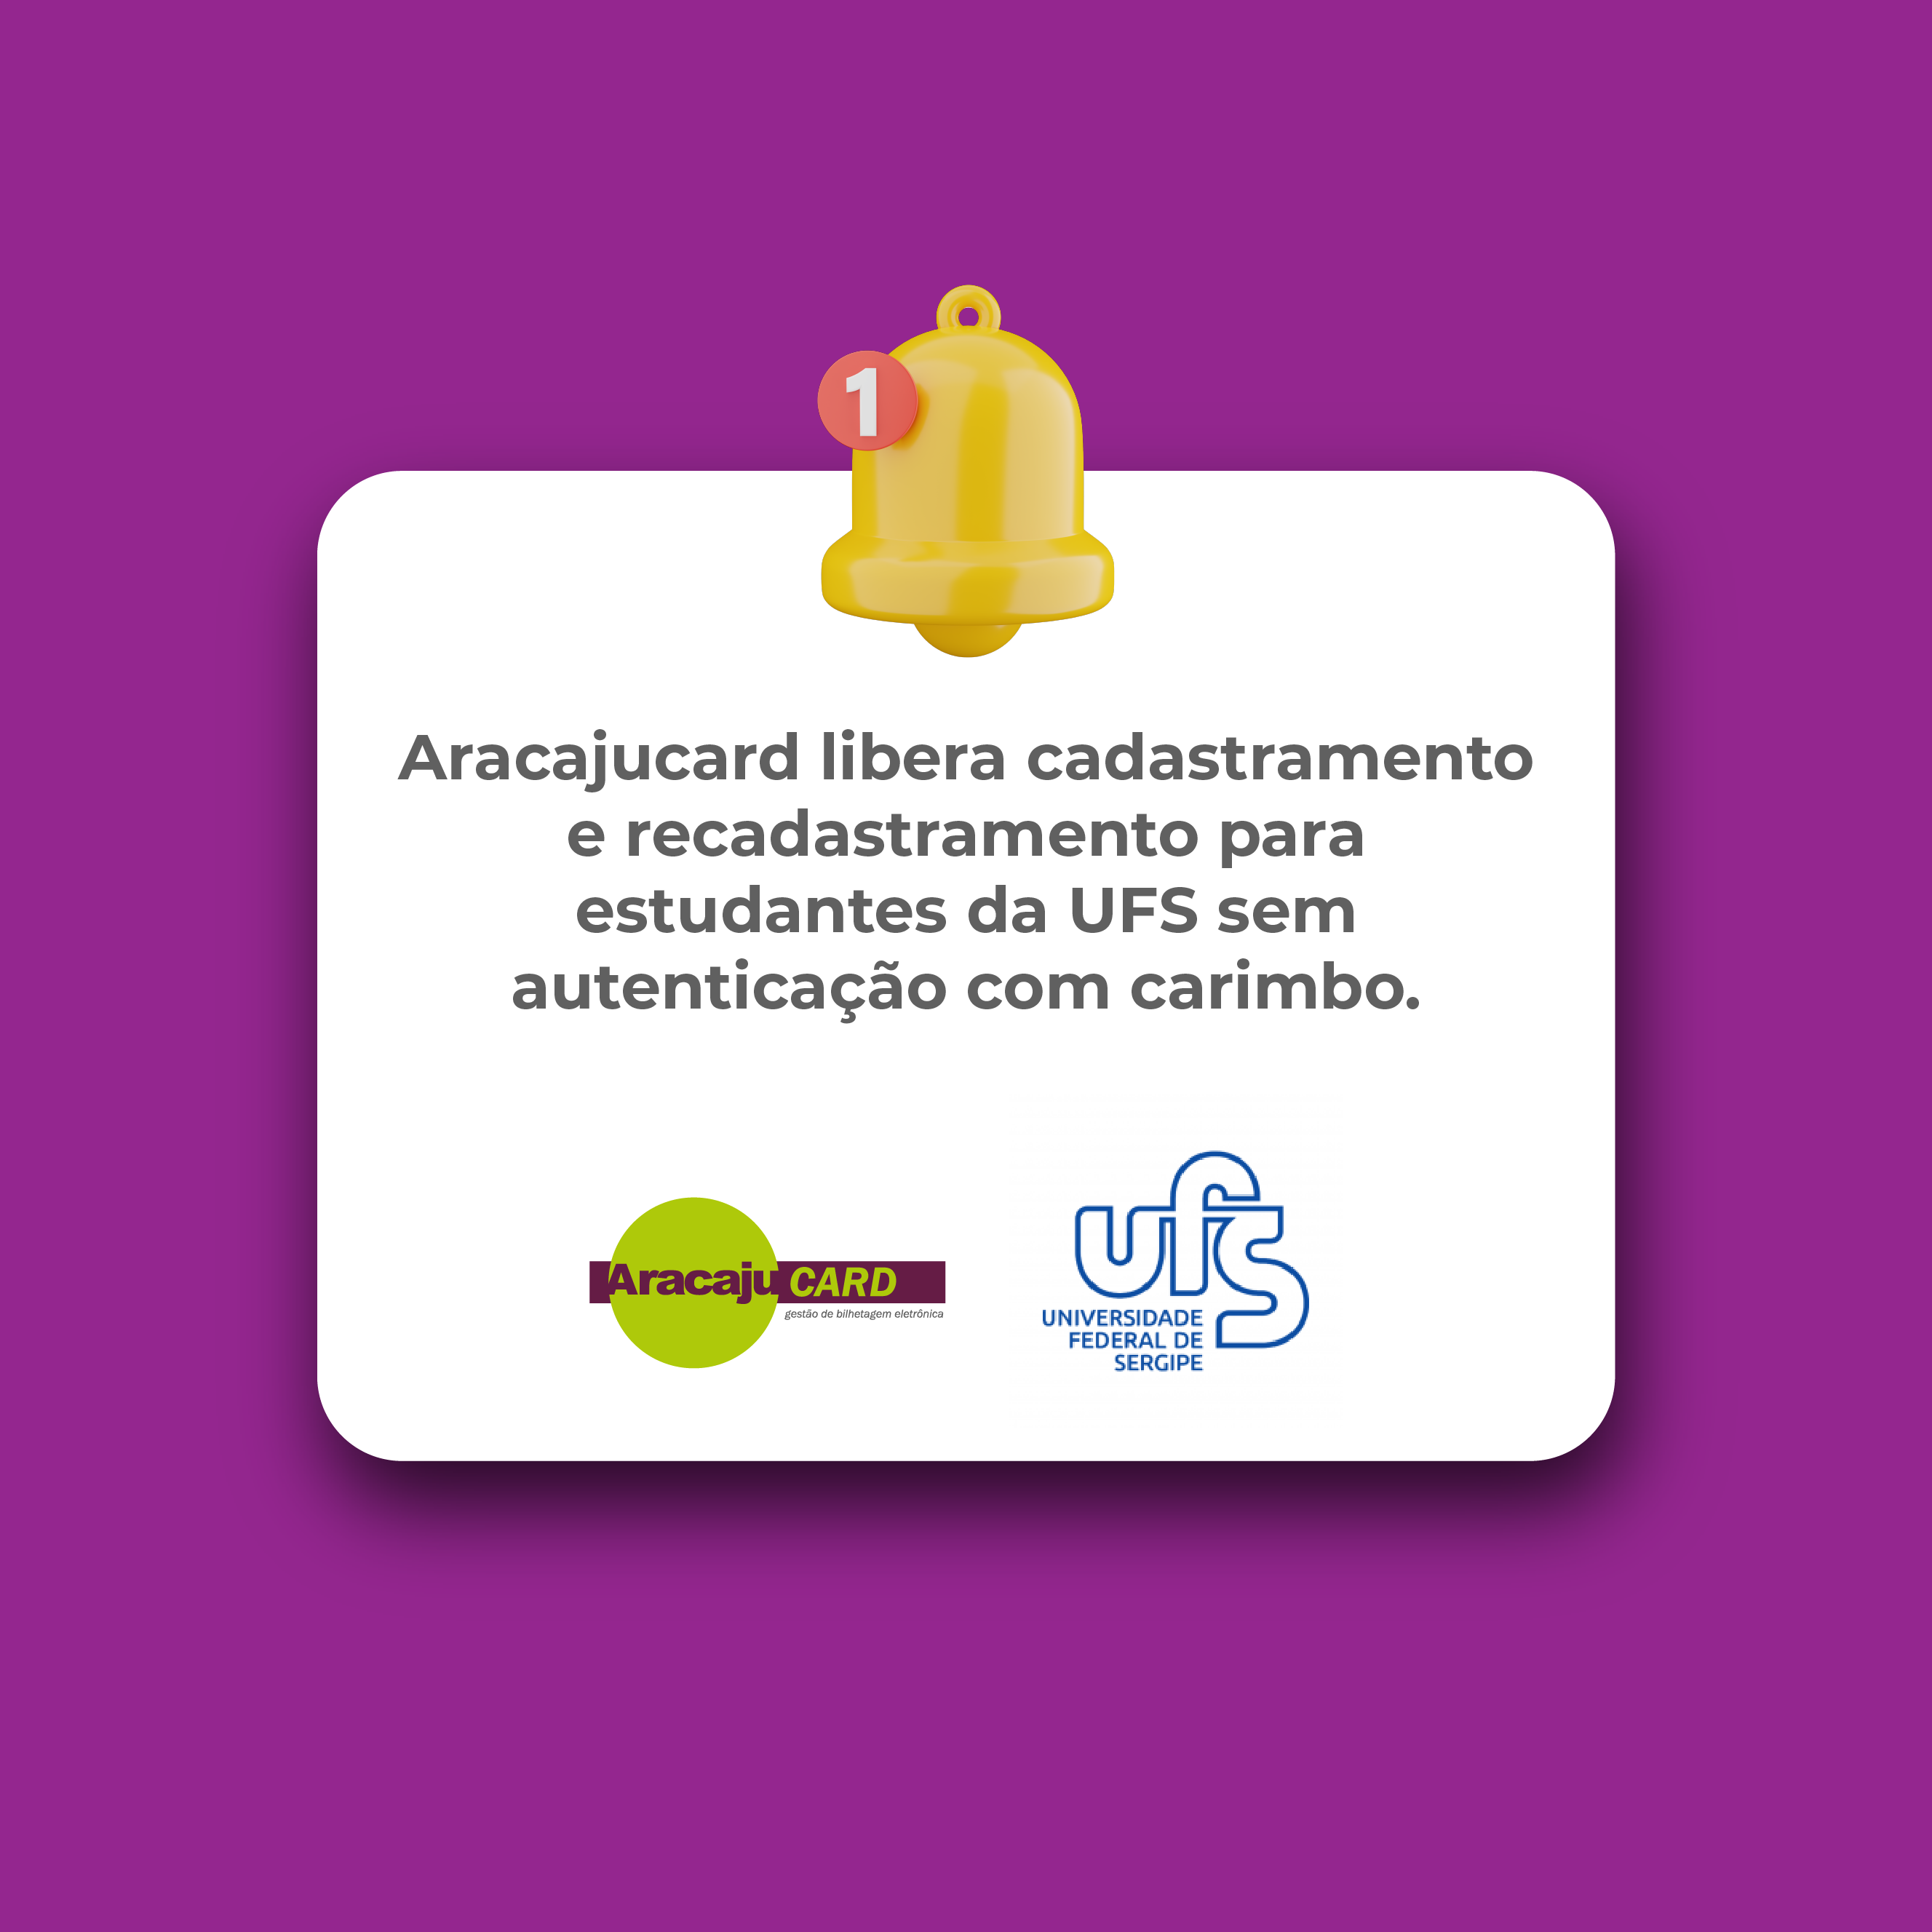 Aracajucard libera cadastramento e recadastramento para estudantes da UFS sem autenticação com carimbo